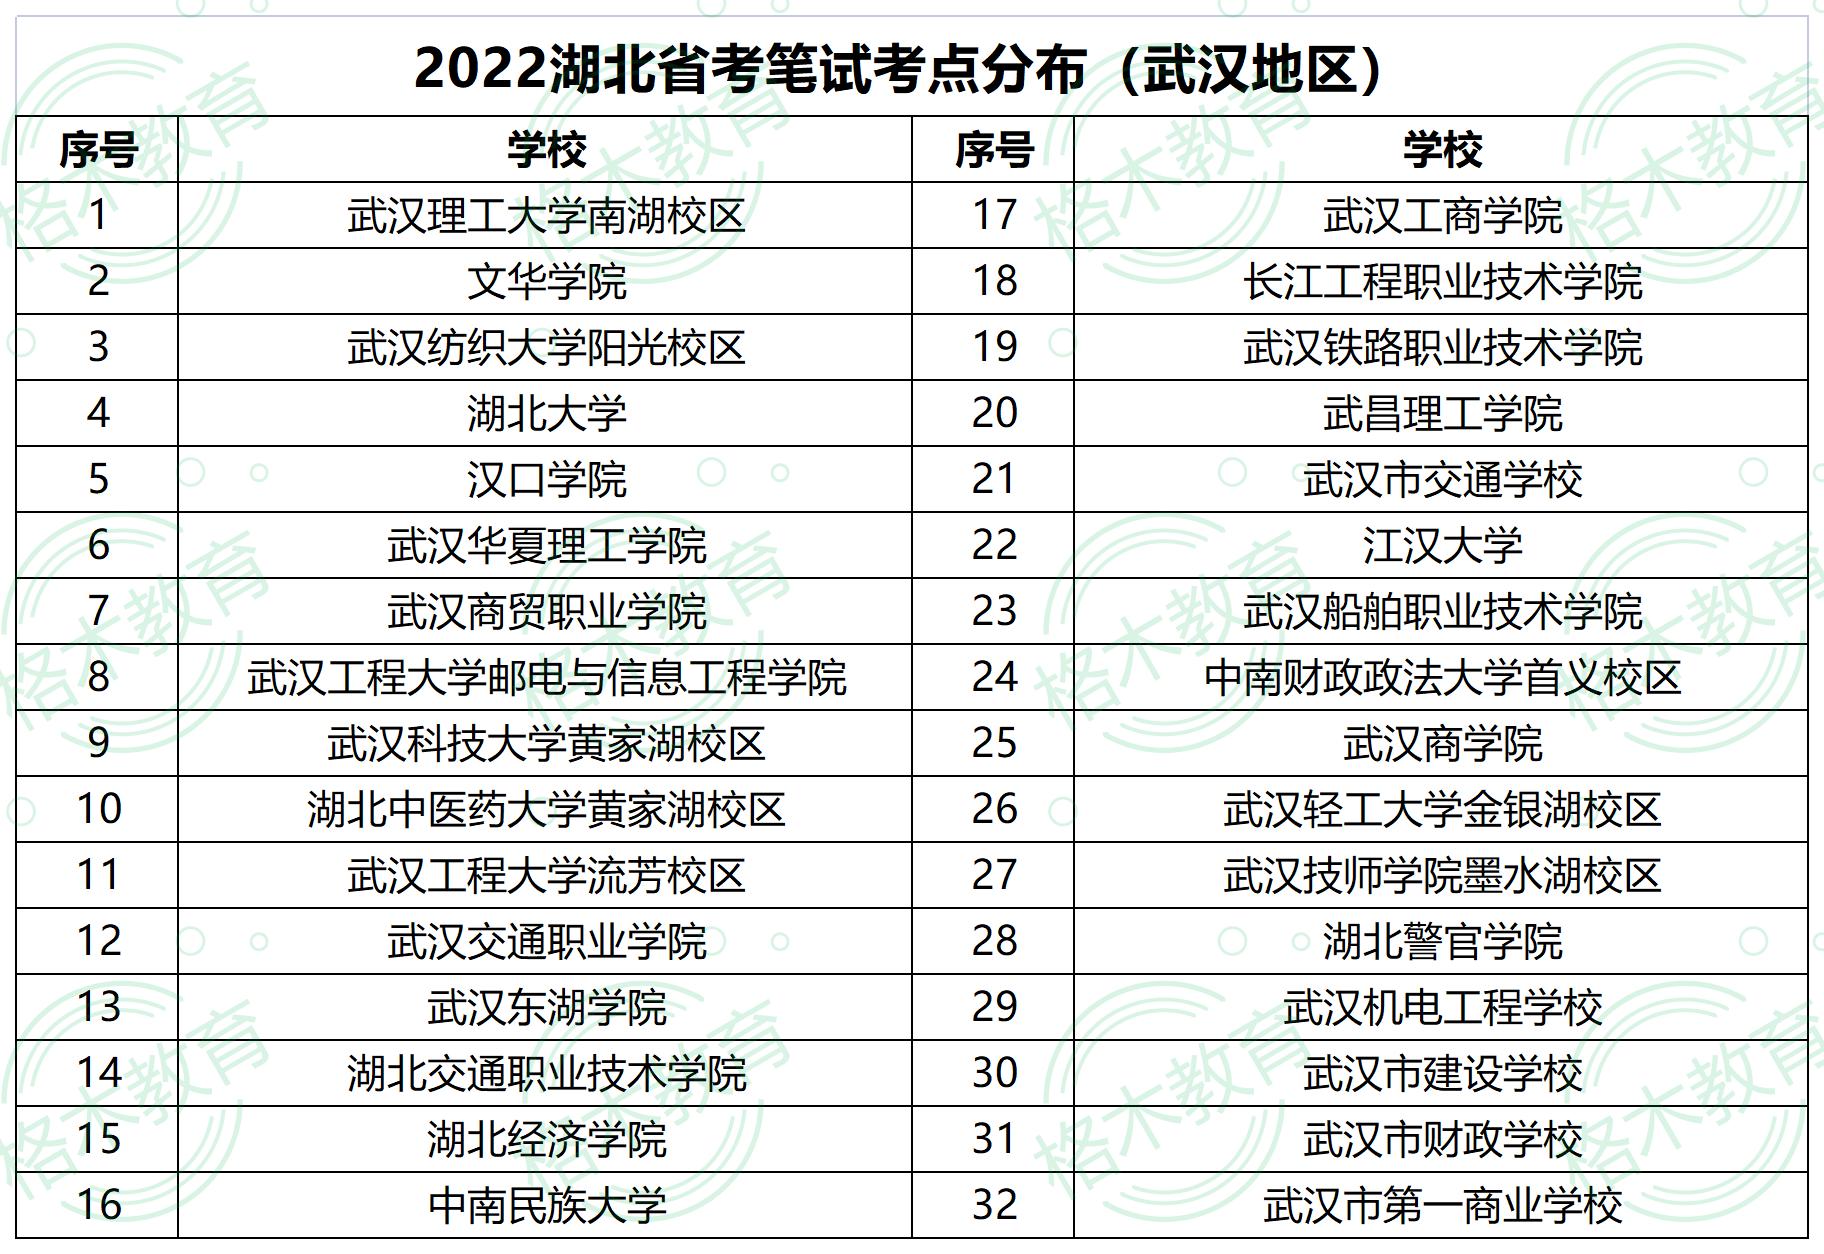 2022年湖北省武汉公务员考试考场分布图—中南民族大学